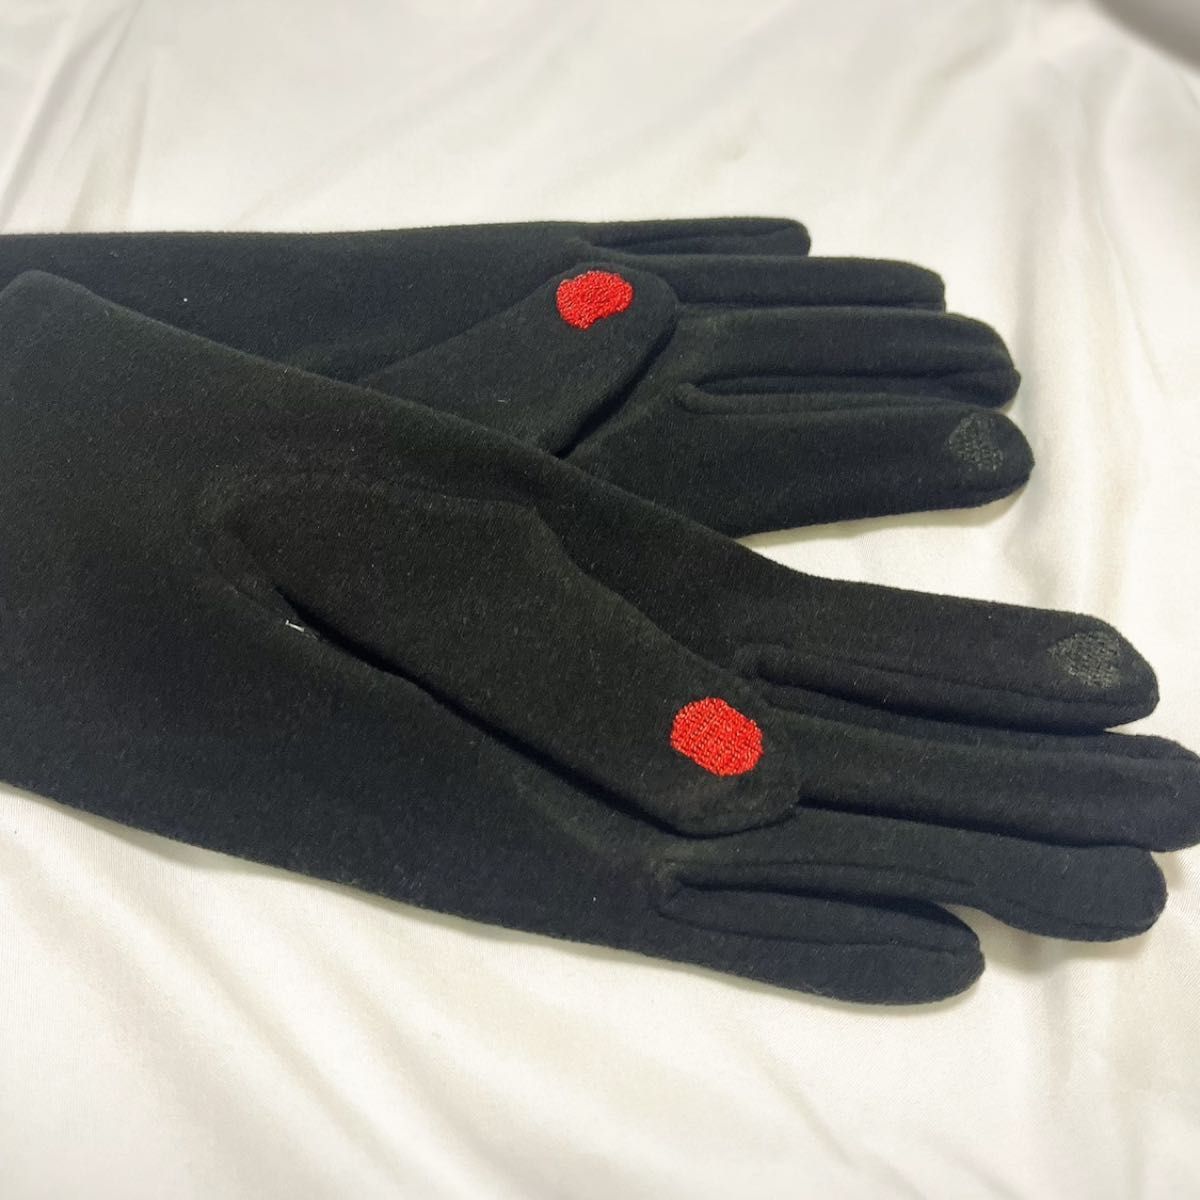 【スマホ対応 】手袋 SALE ネイルデザイン レディース かわいい 裏起毛 暖か